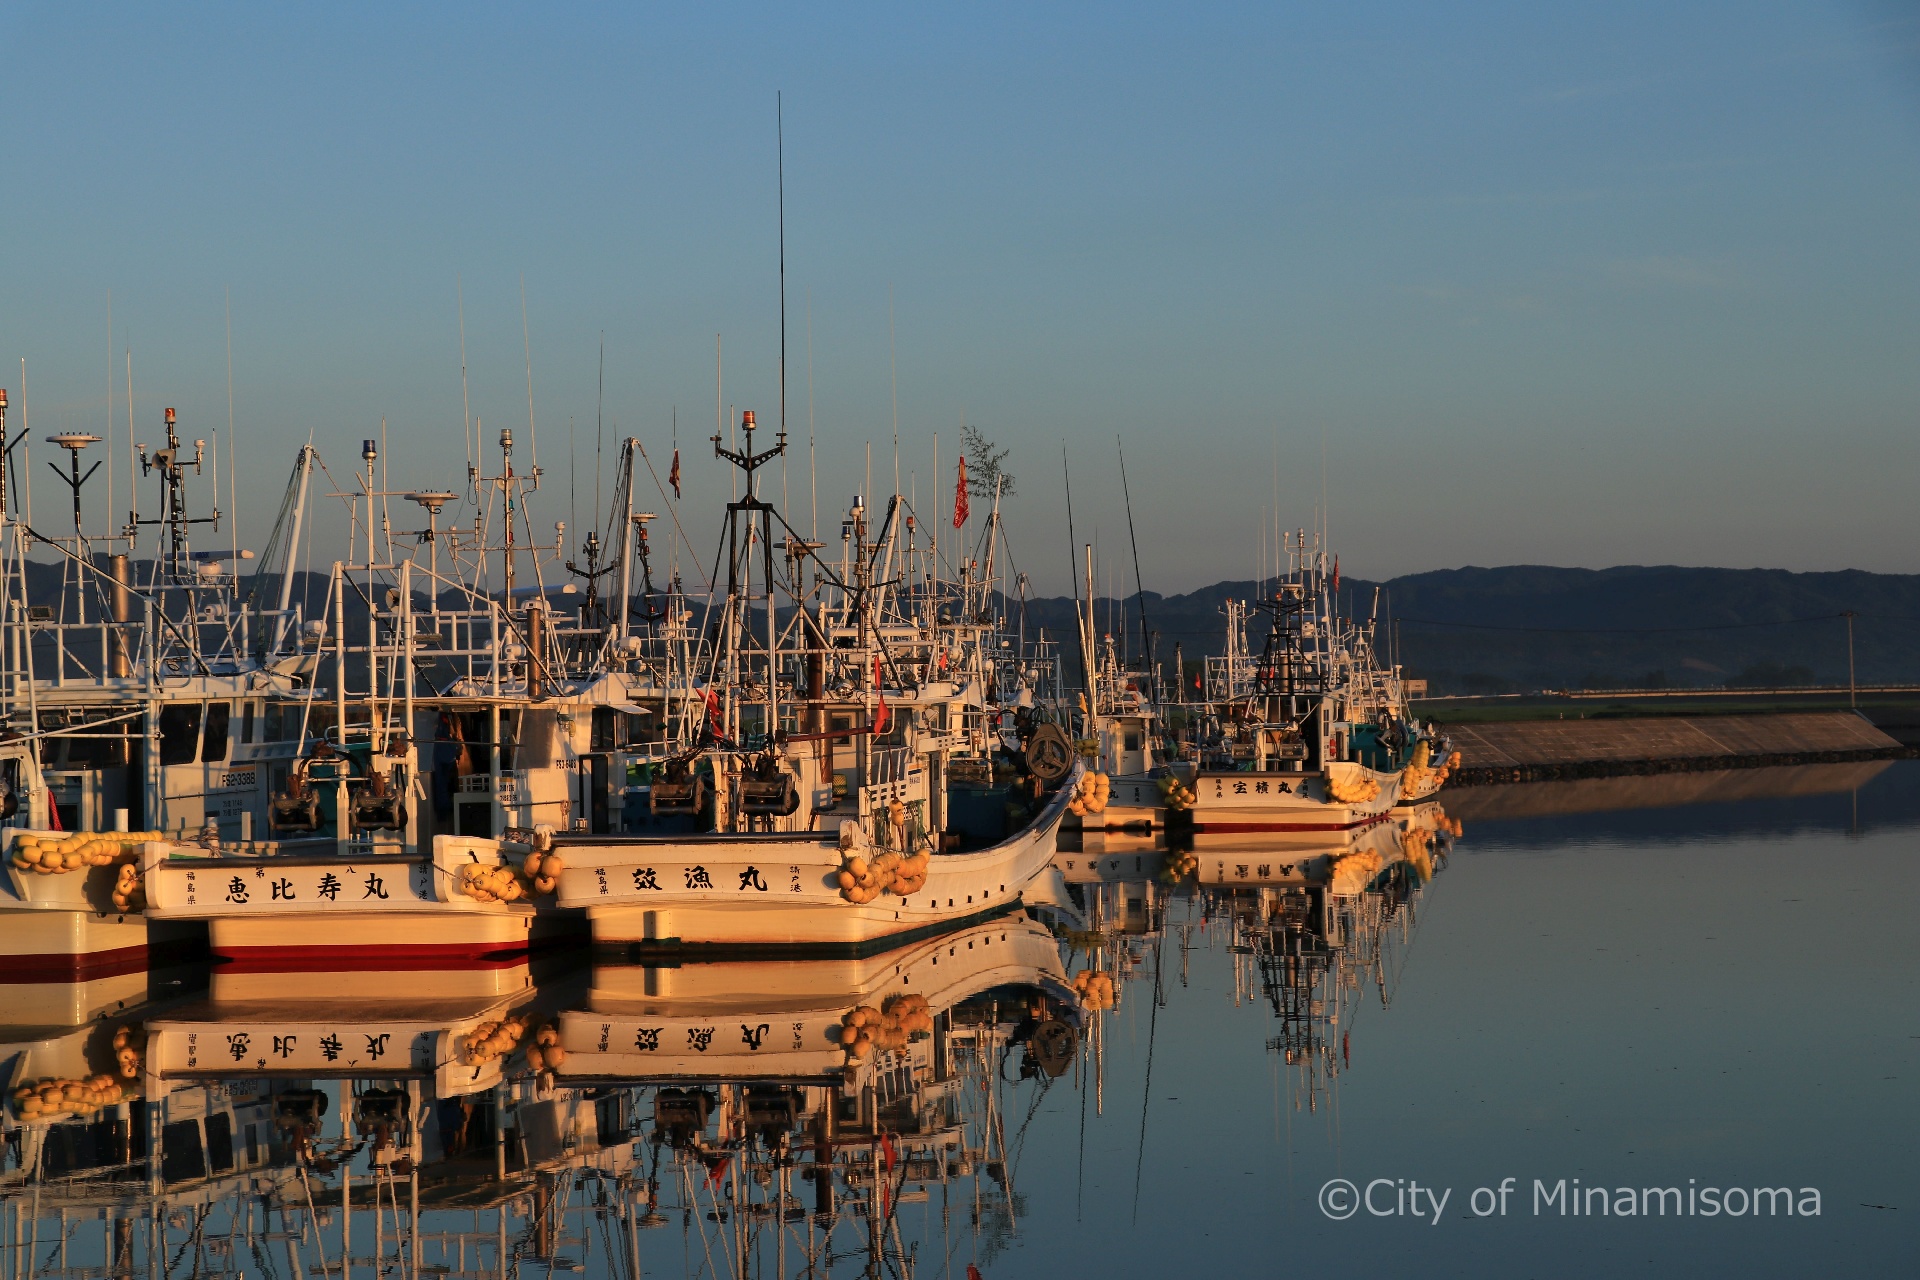 早朝の真野川漁港の様子。鏡のように凪いだ水面に、係留された漁船が映っている。